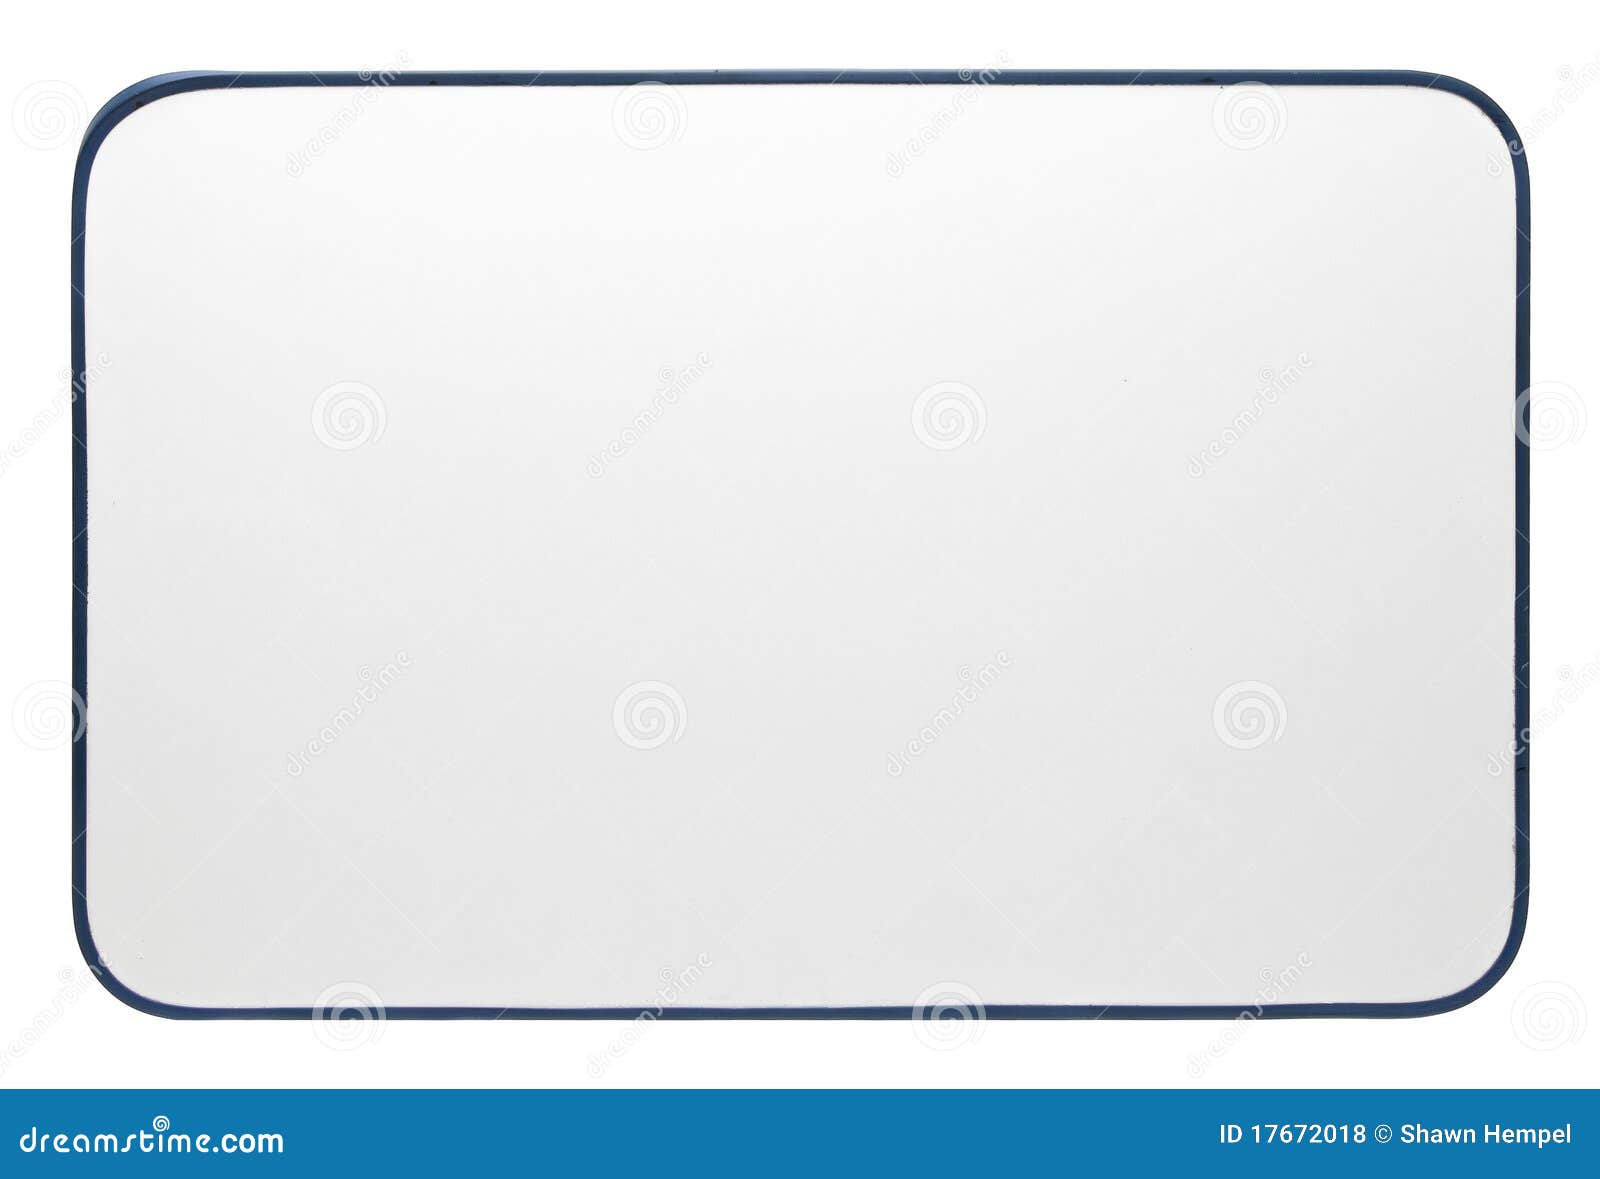 empty whiteboard